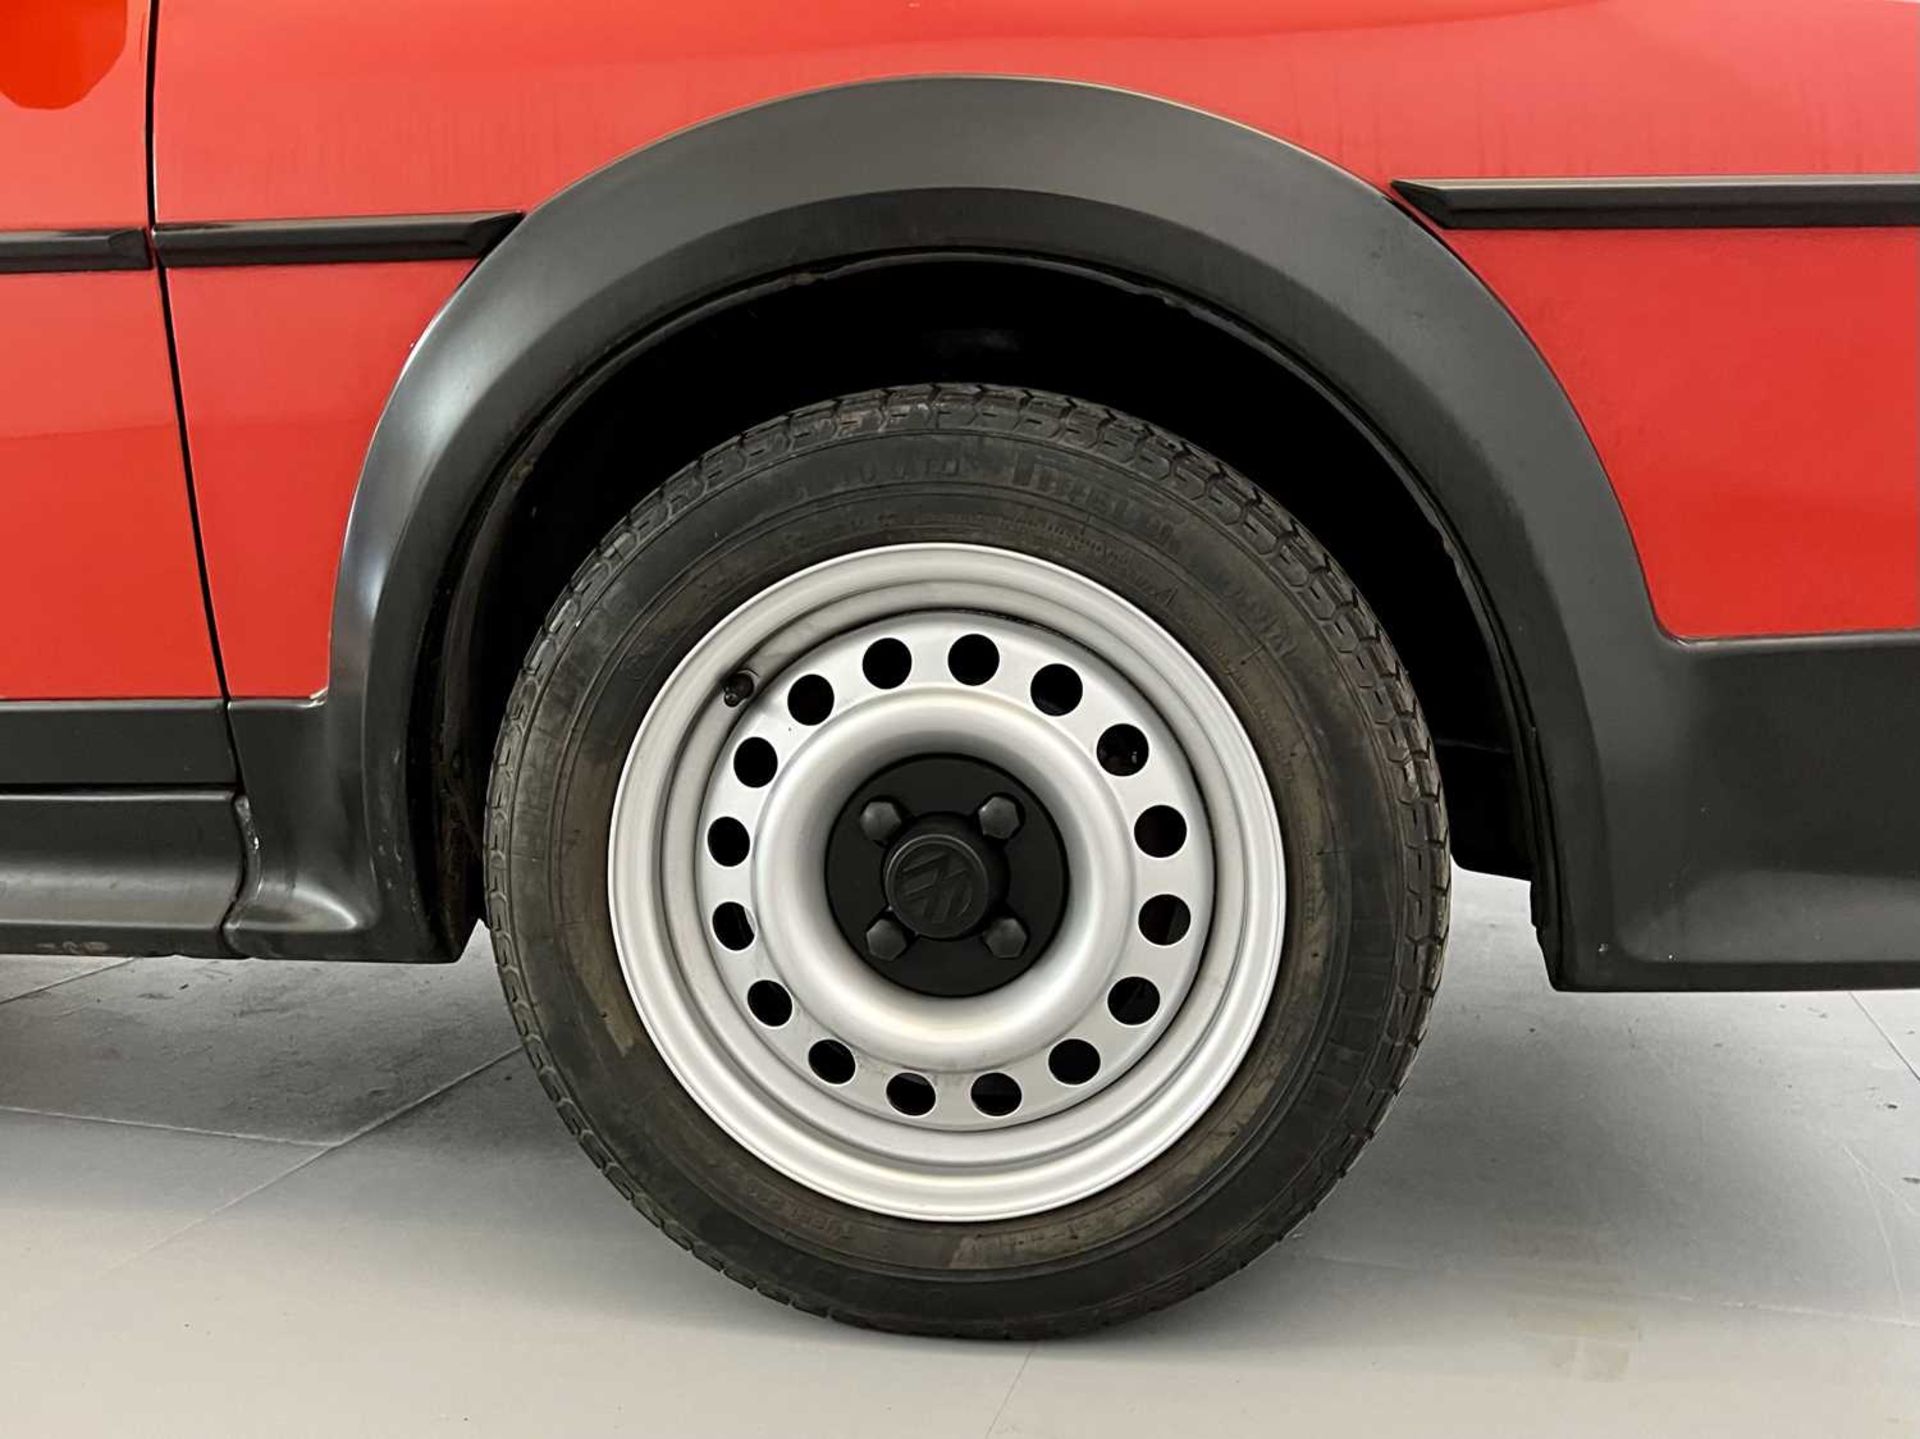 1985 Volkswagen Scirocco GTS - Image 16 of 30